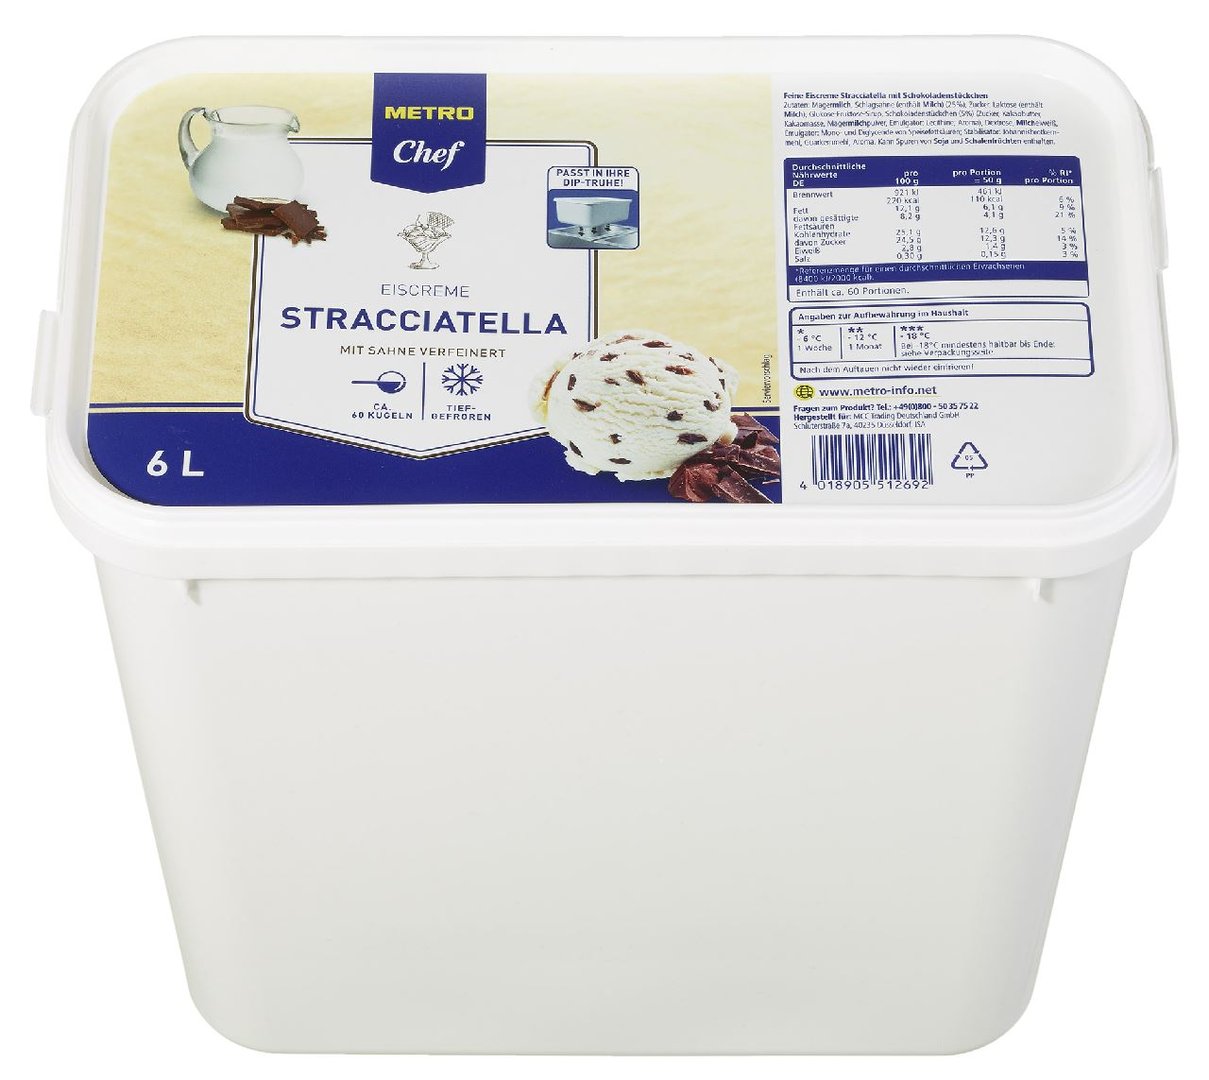 METRO Chef - Eiscreme Stracciatella mit Sahne verfeinert, tiefgefroren - 6 l Kanne